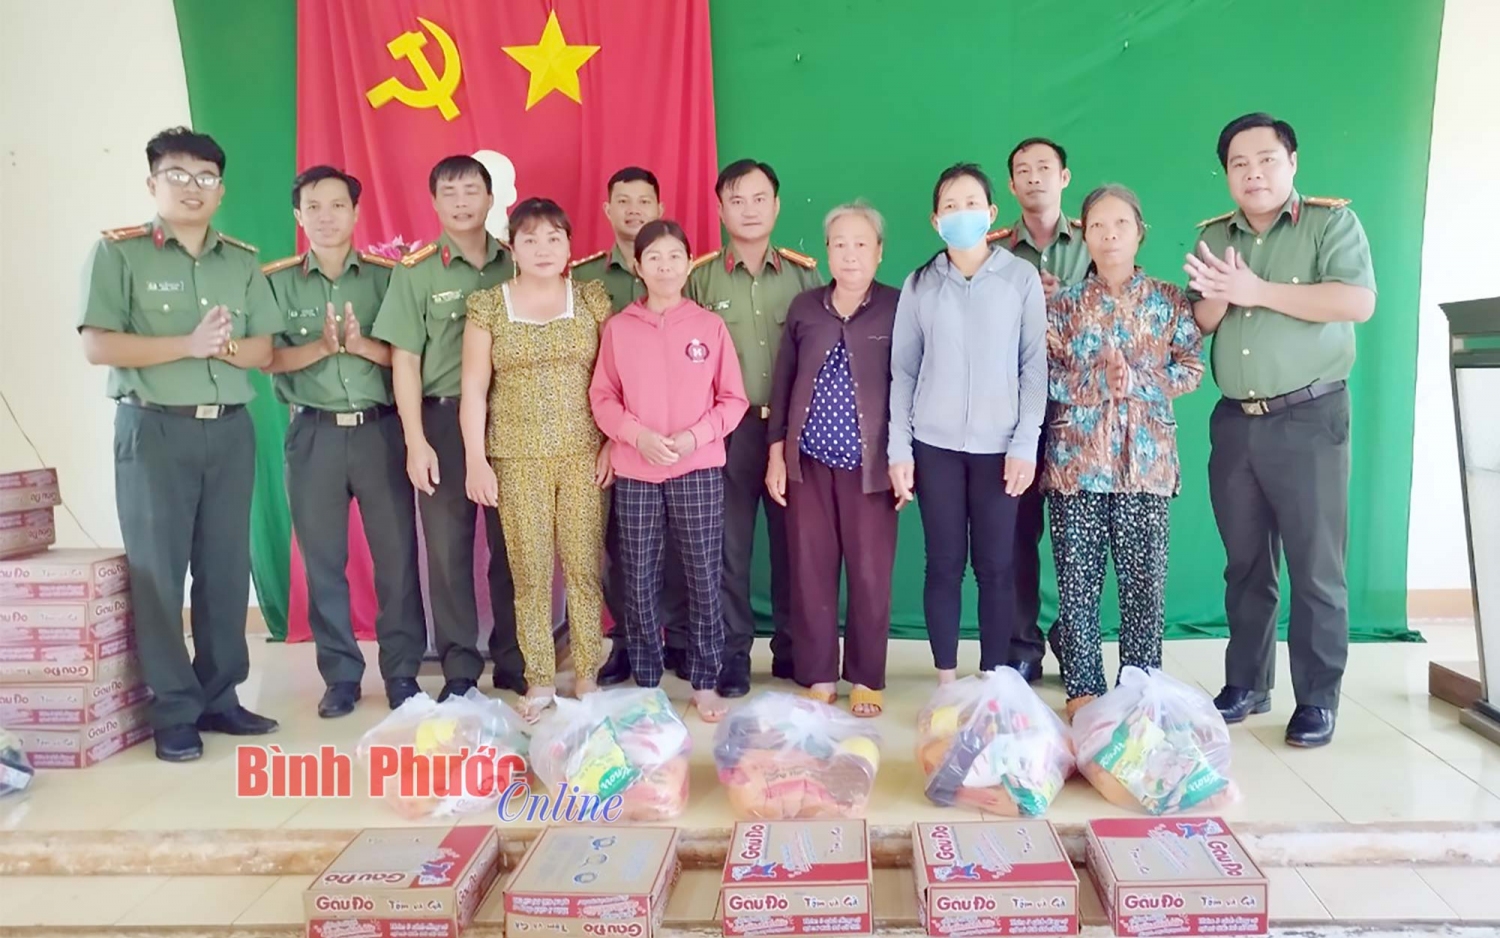 Cán bộ Phòng Tổ chức cán bộ- Công an tỉnh Bình Phước trao quà cho người dân xã Lộc Thành, huyện Lộc Ninh (Ảnh: Báo Bình Phước online)